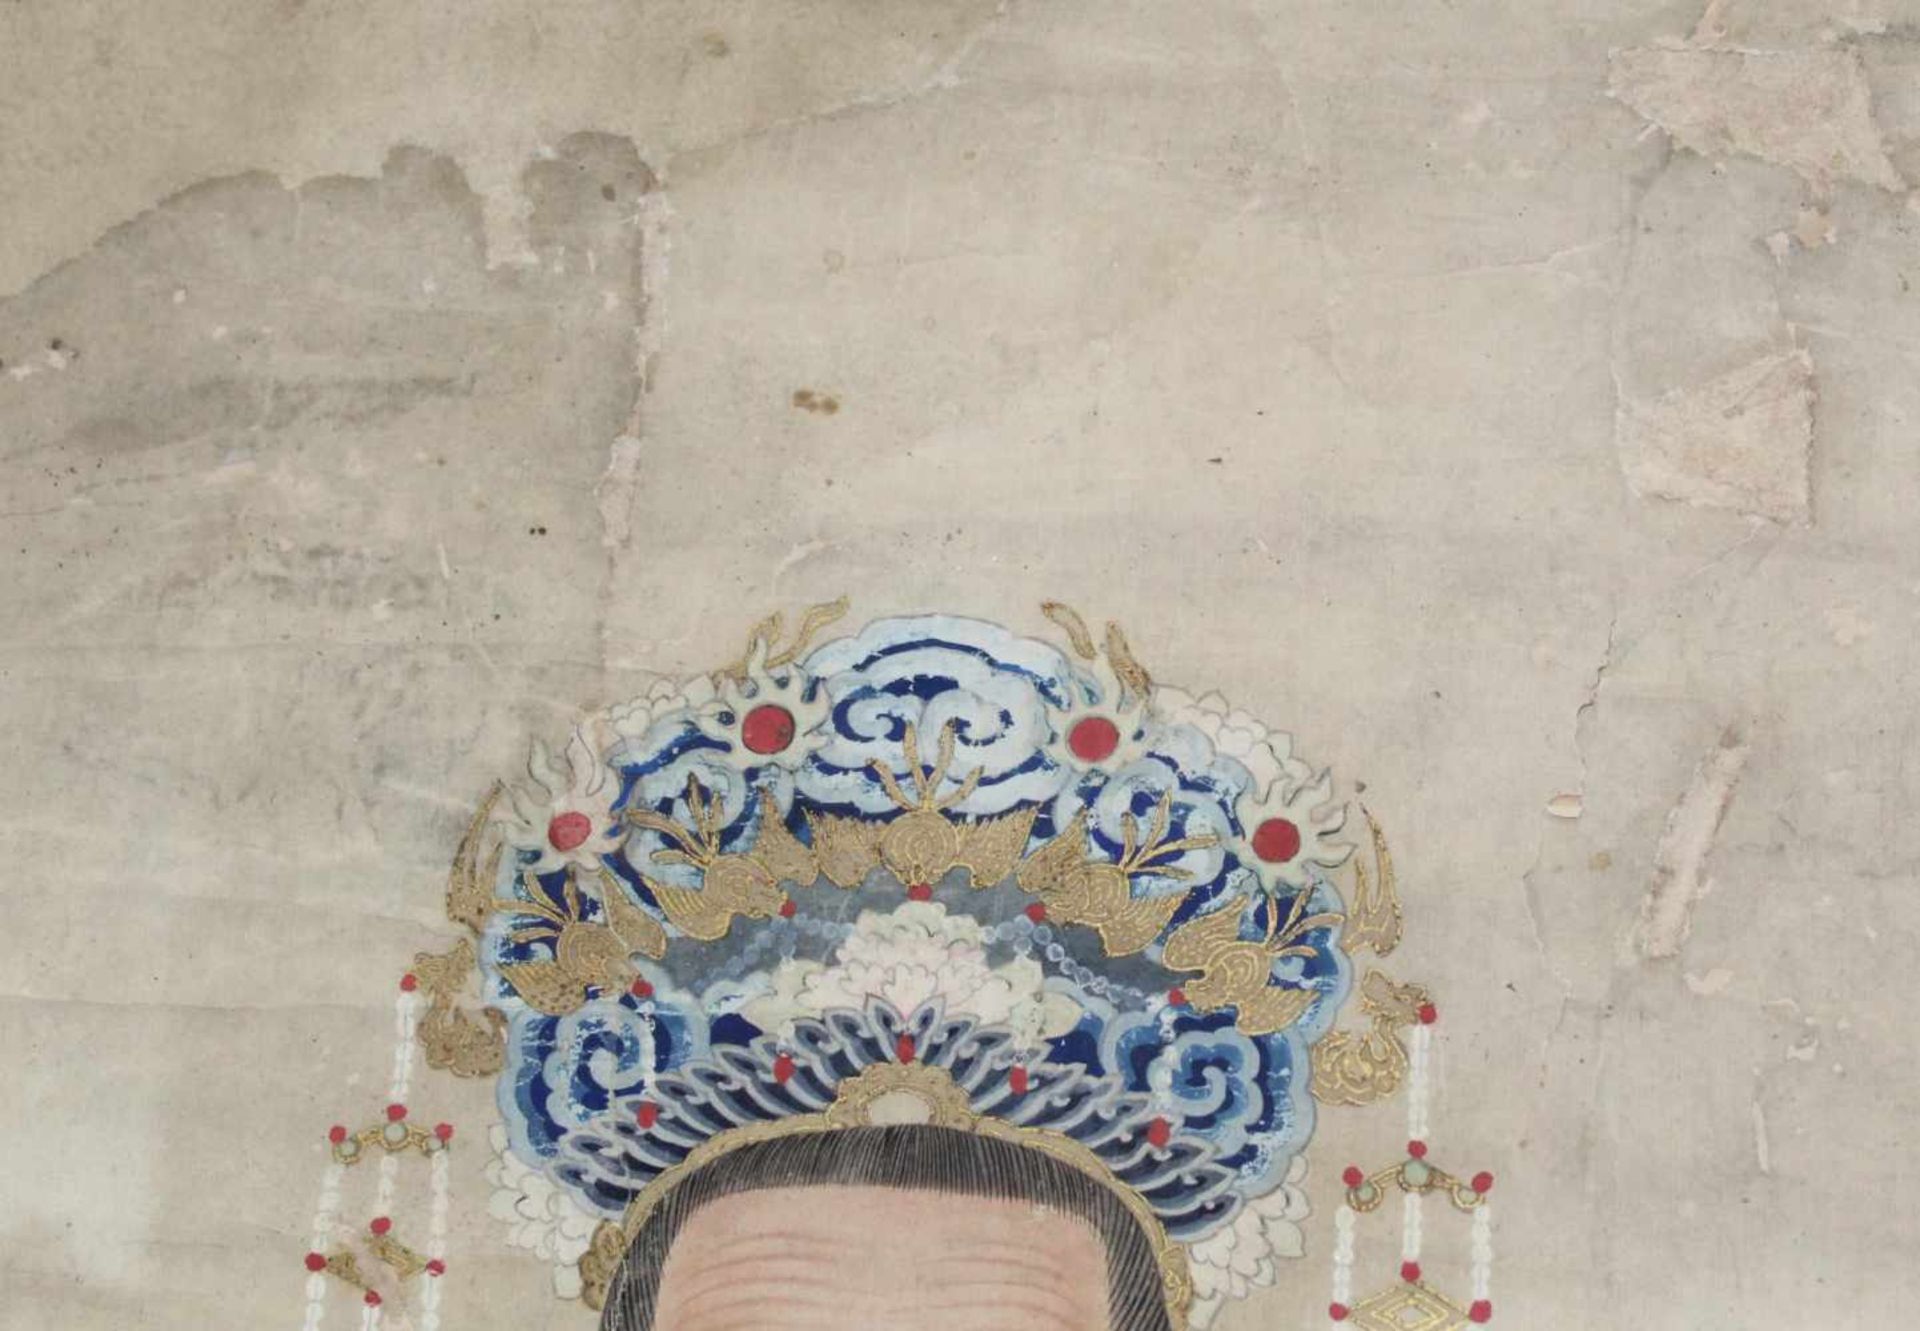 Ahnenbild. Ein Beamter und eine Frau. China.120 cm x 80 cm. Aquarell / Guache auf Papier, gemalt. - Bild 8 aus 9